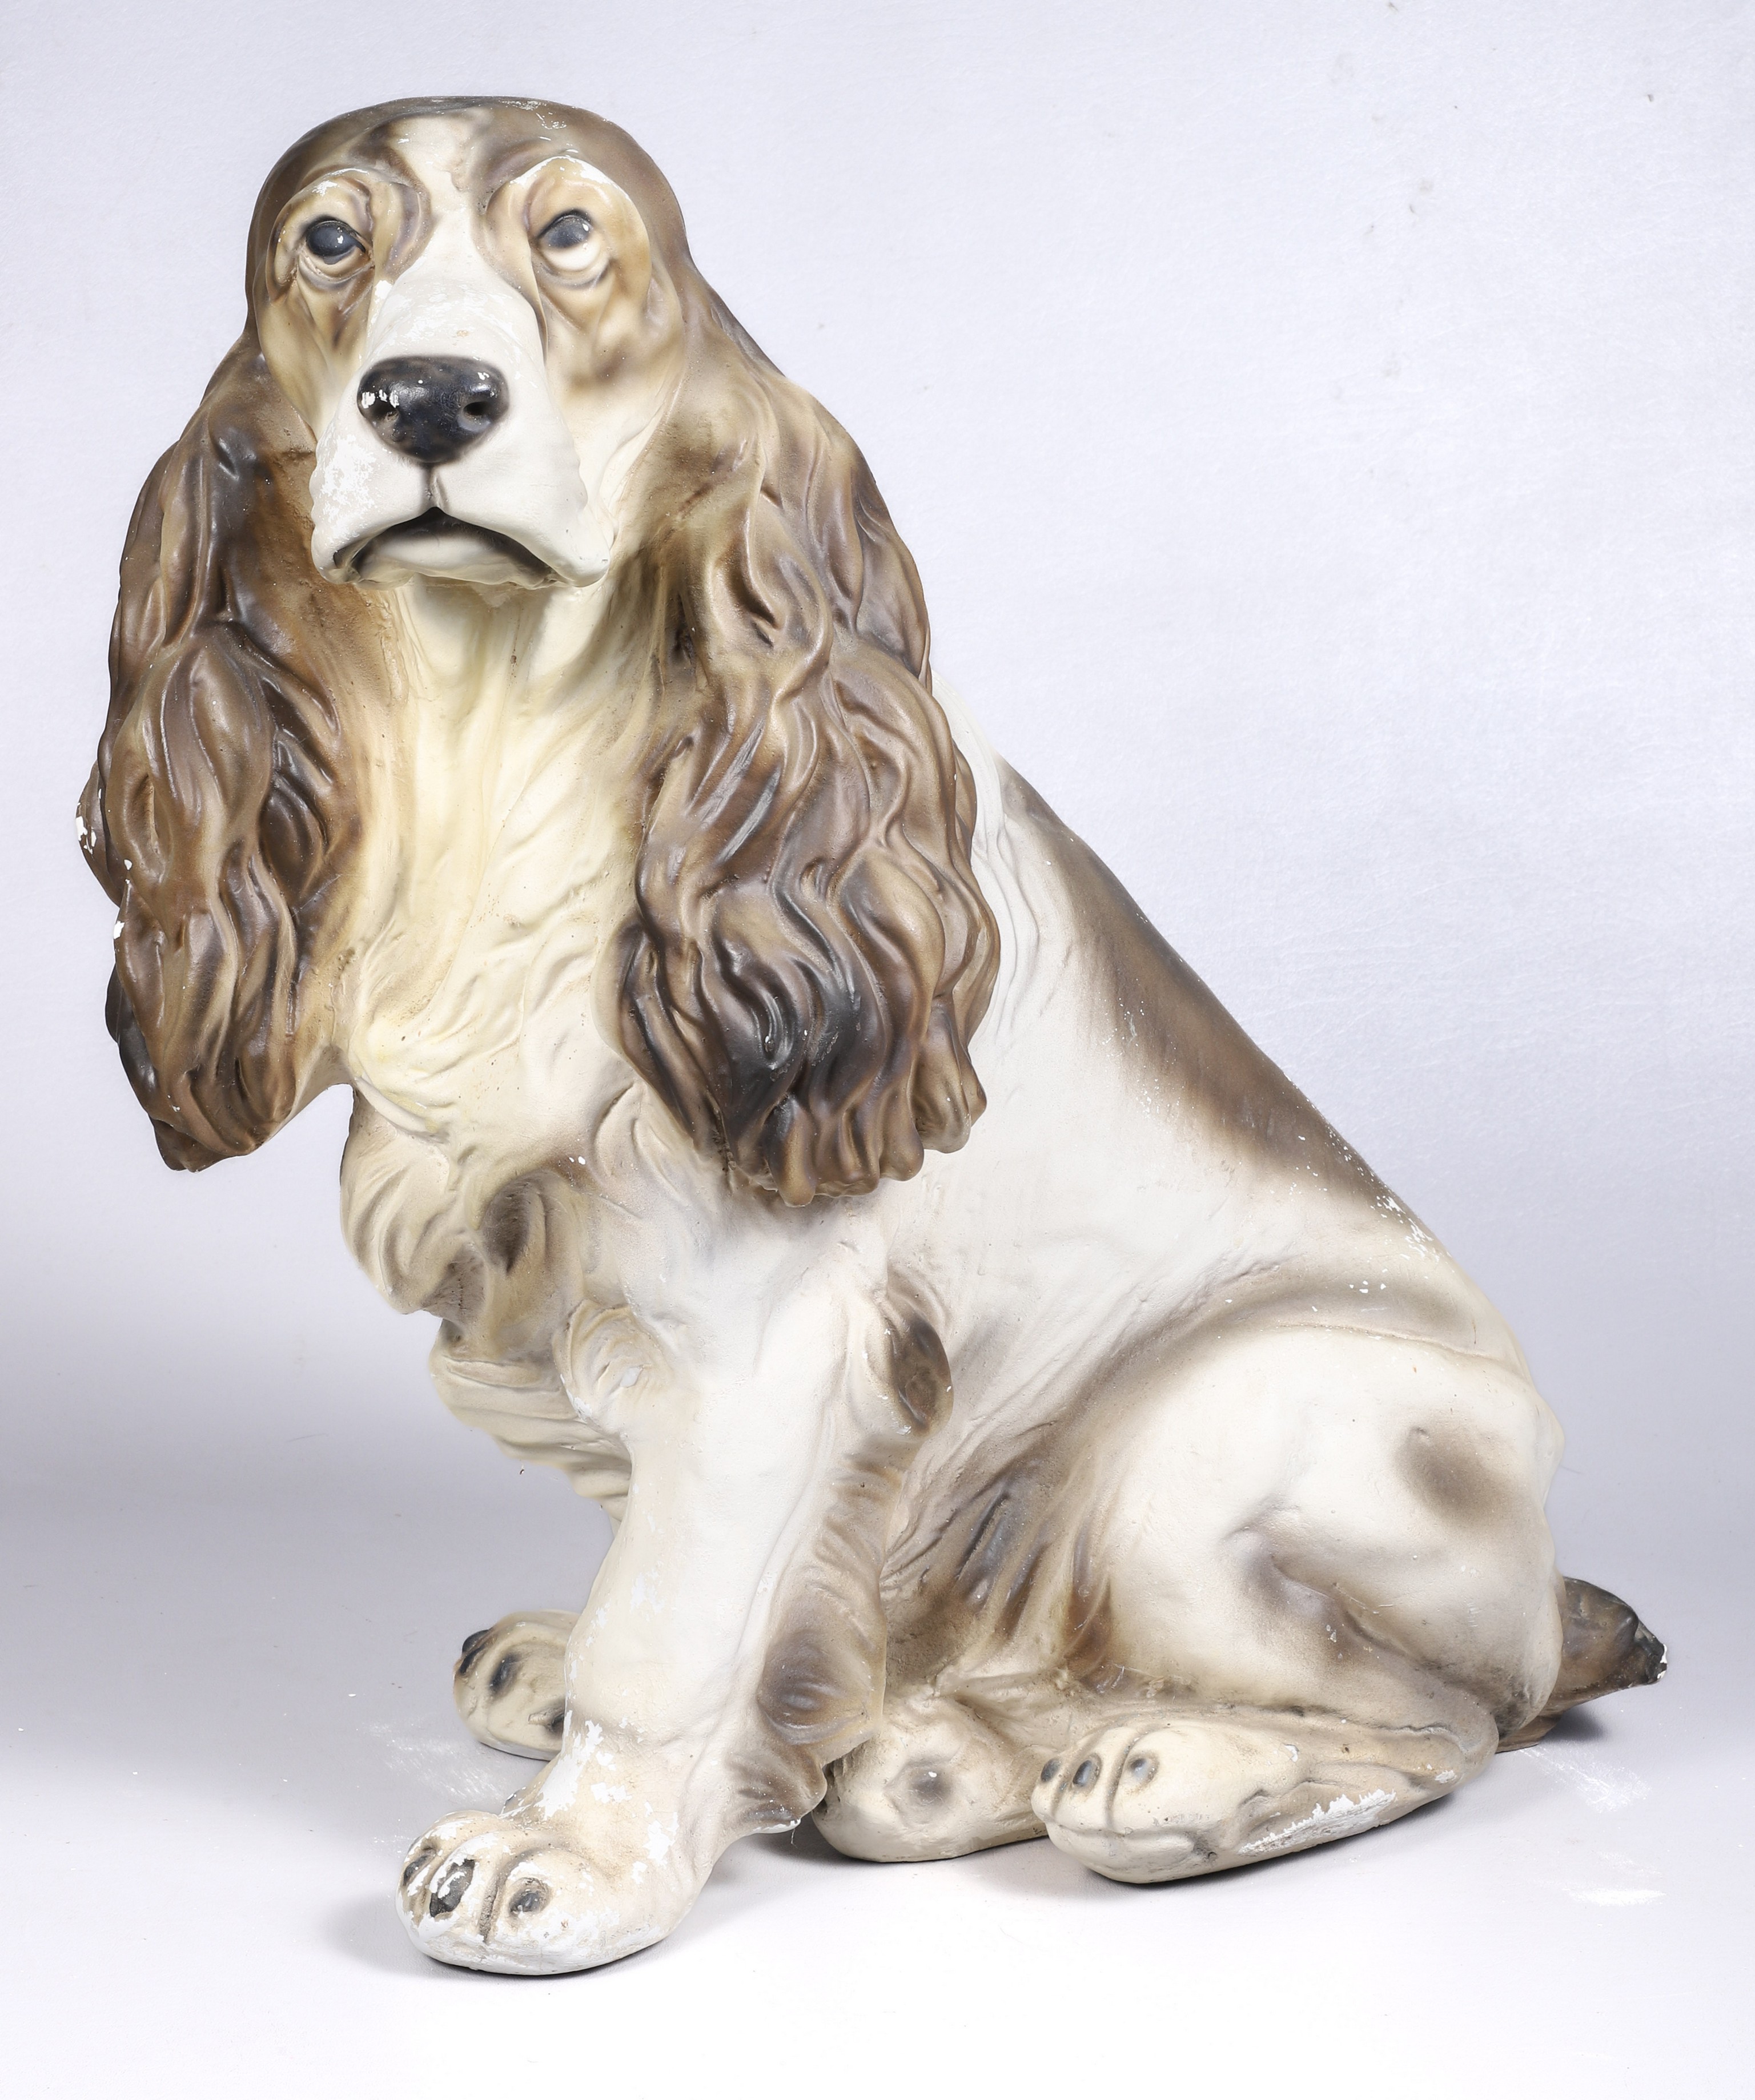 Lifesize chalkware Spaniel dog